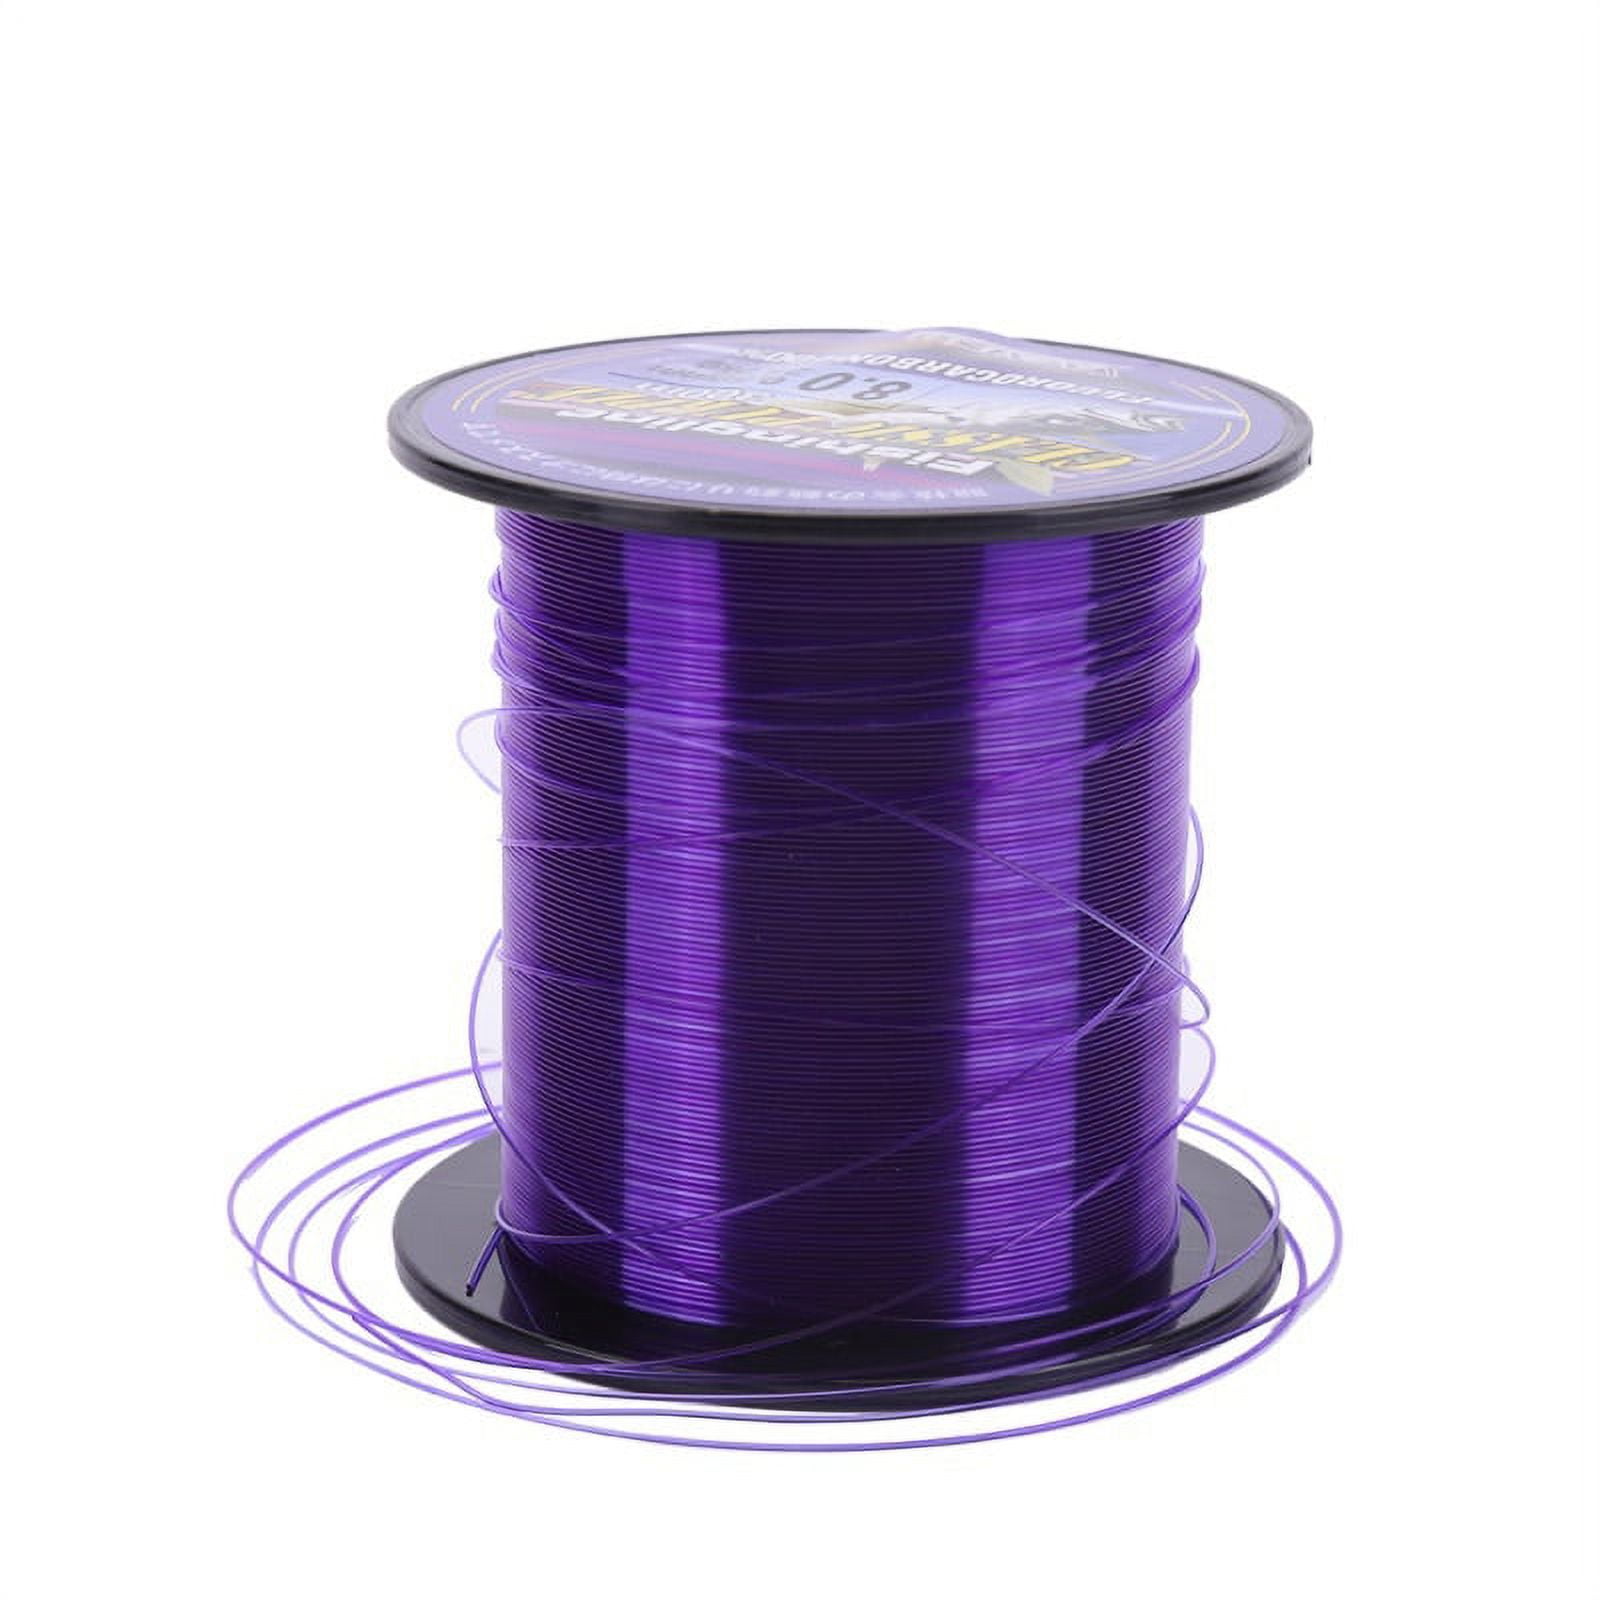 300M fishing line 100% transparent Fishing Line purple Nylon Super